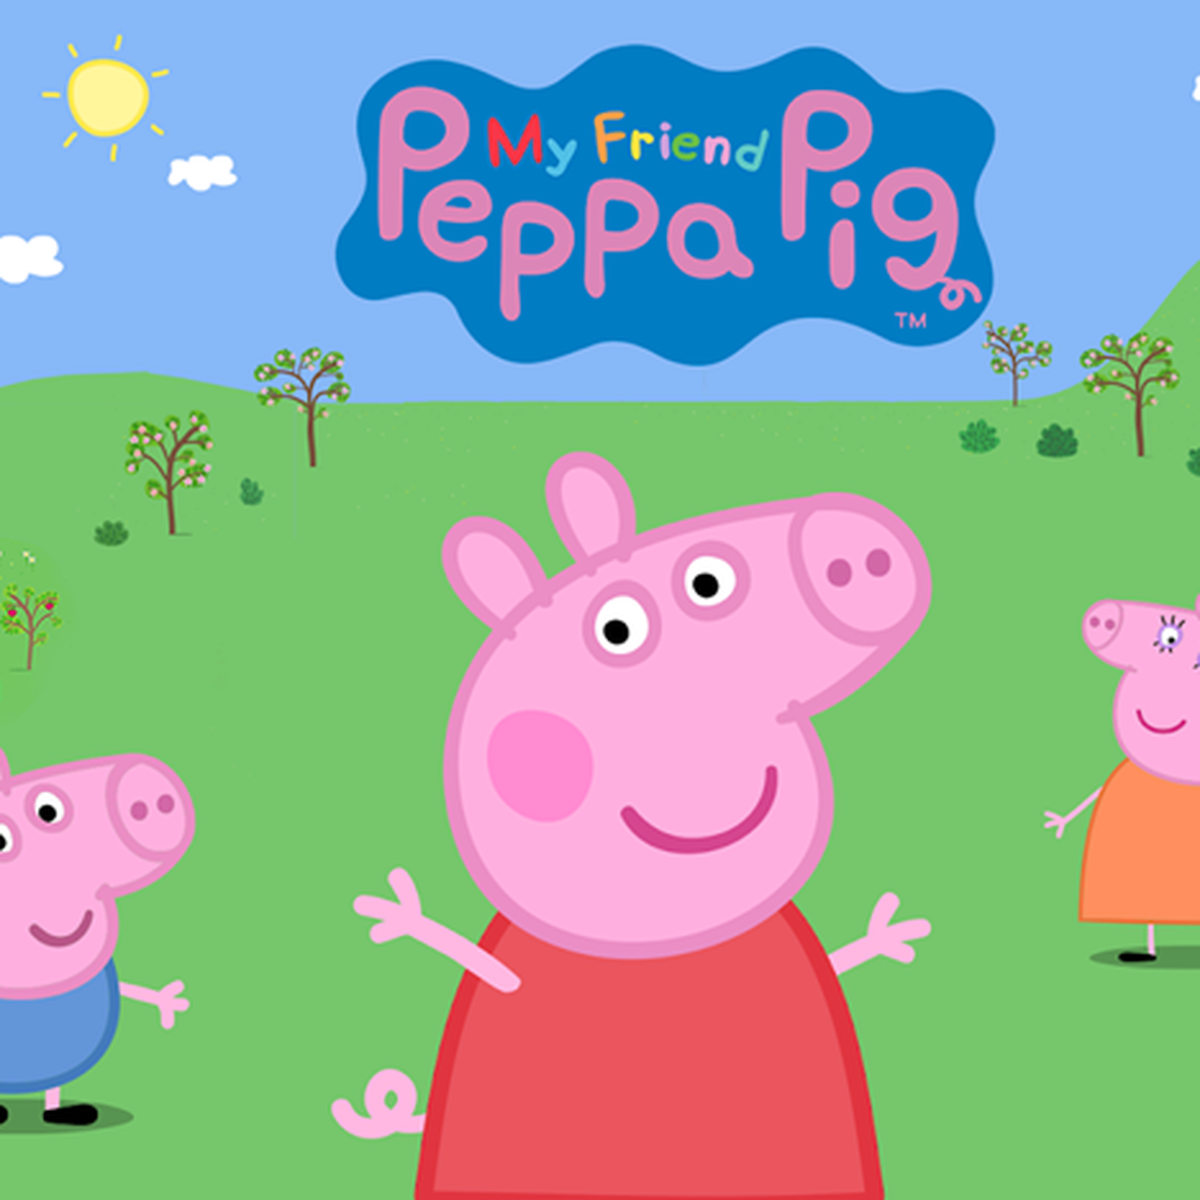 Моя подружка Peppa Pig ps4. My friend Peppa Pig игра. Namco моя подружка Peppa Pig ps4 игра. My friend Peppa Pig PS 4. Peppa friends